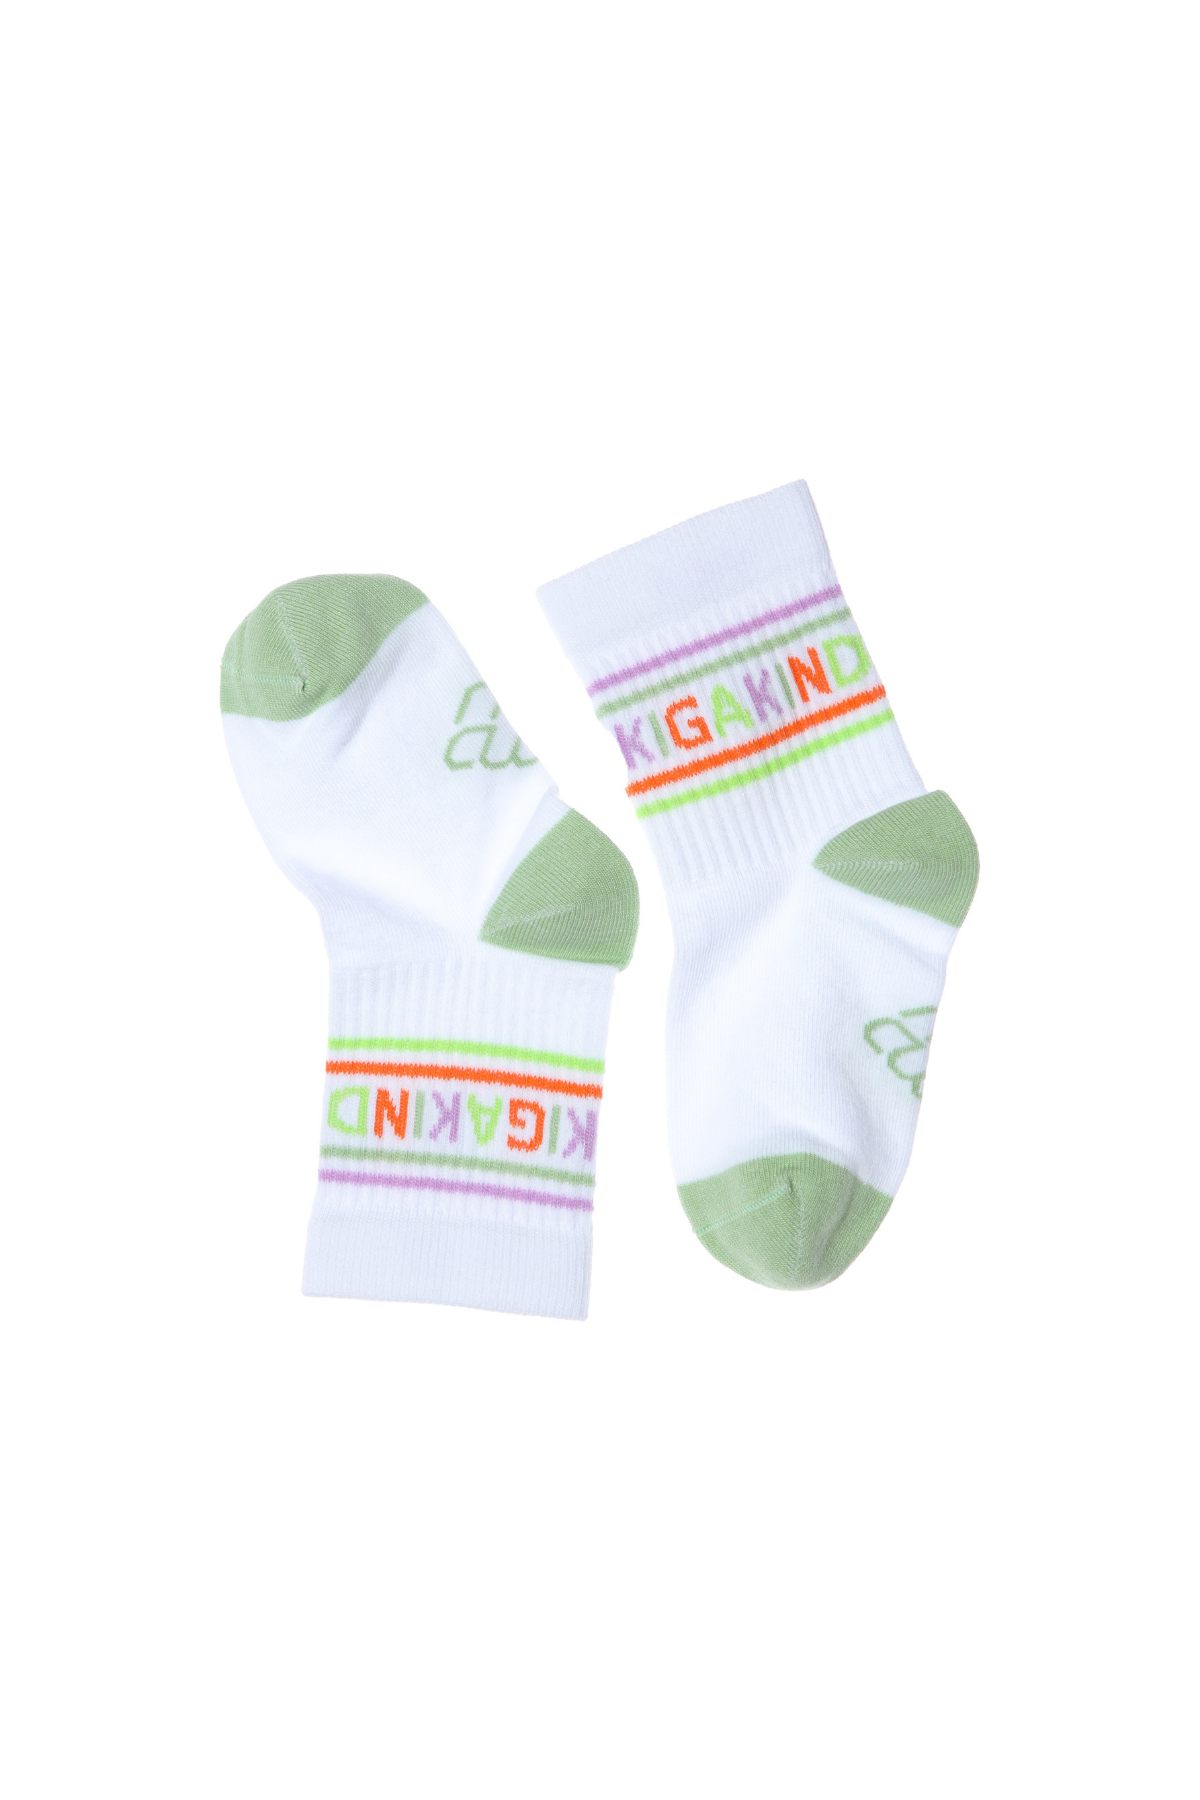 Socken "KiGaKind" | verschiedene Farben